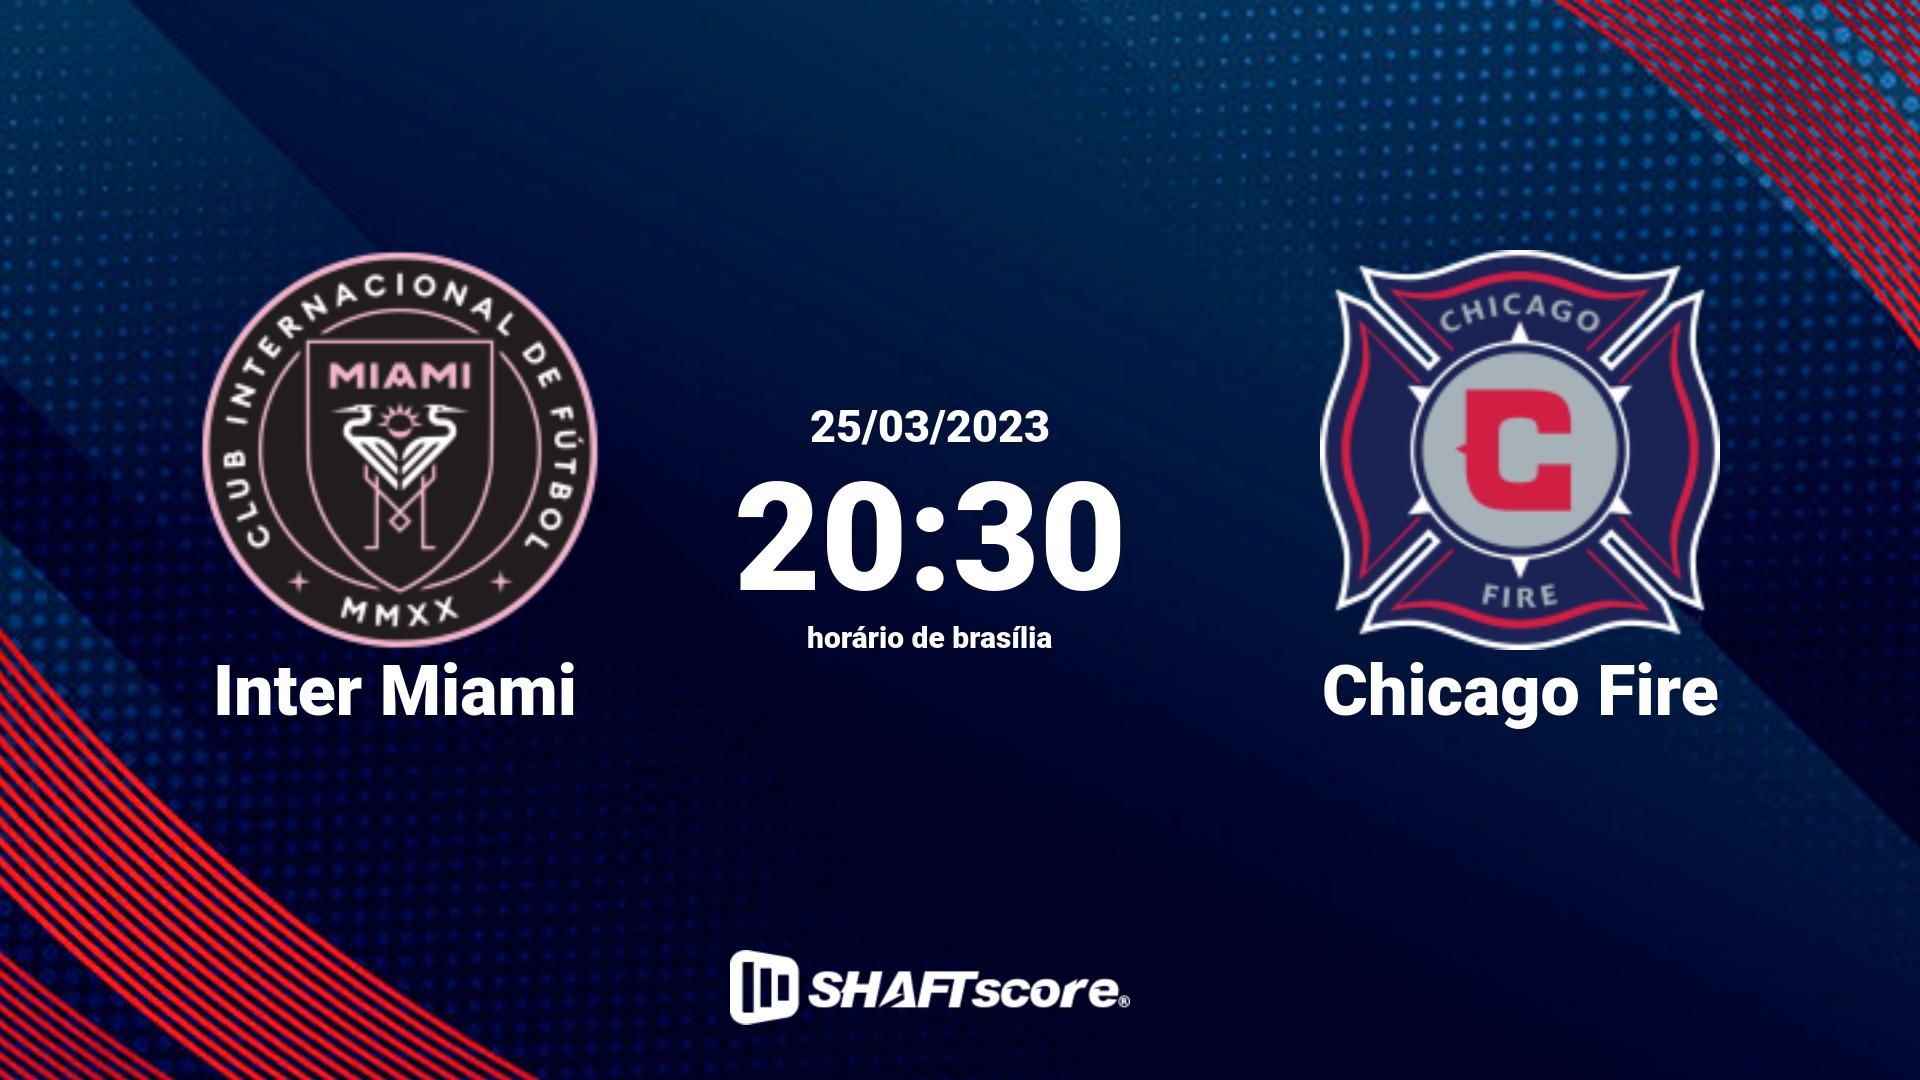 Estatísticas do jogo Inter Miami vs Chicago Fire 25.03 20:30